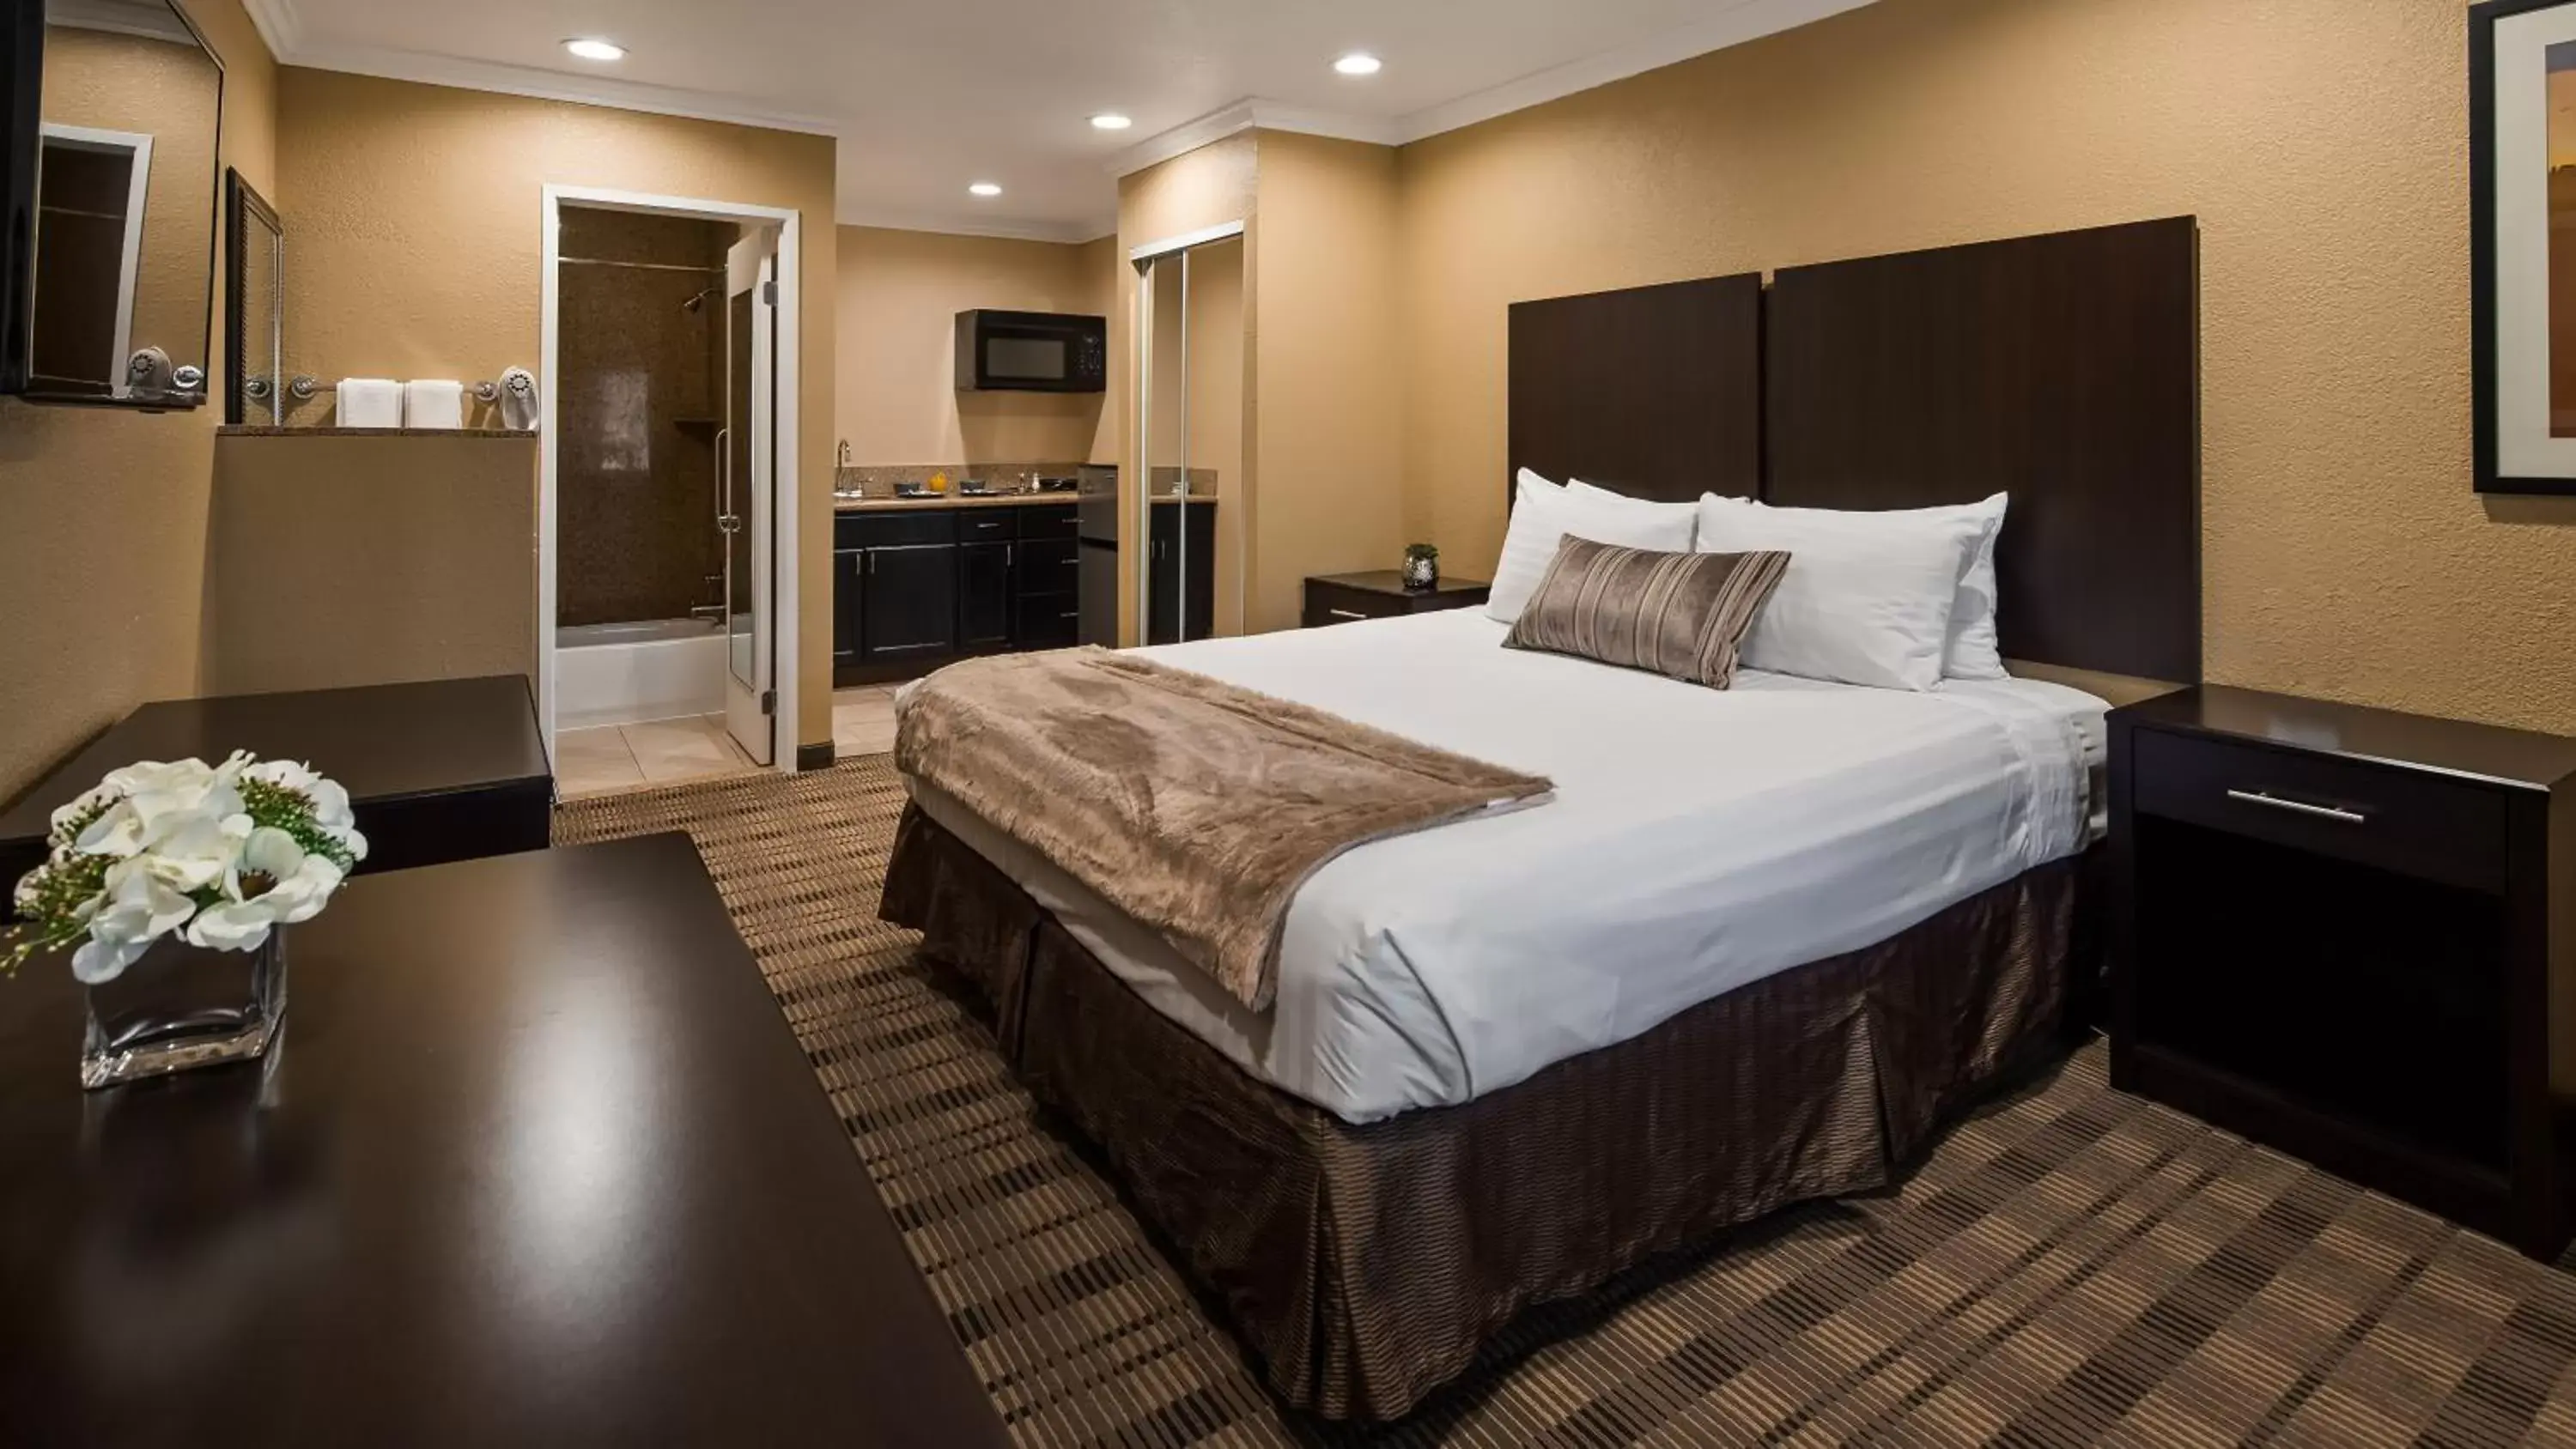 Bedroom, Bed in Best Western Poway/San Diego Hotel